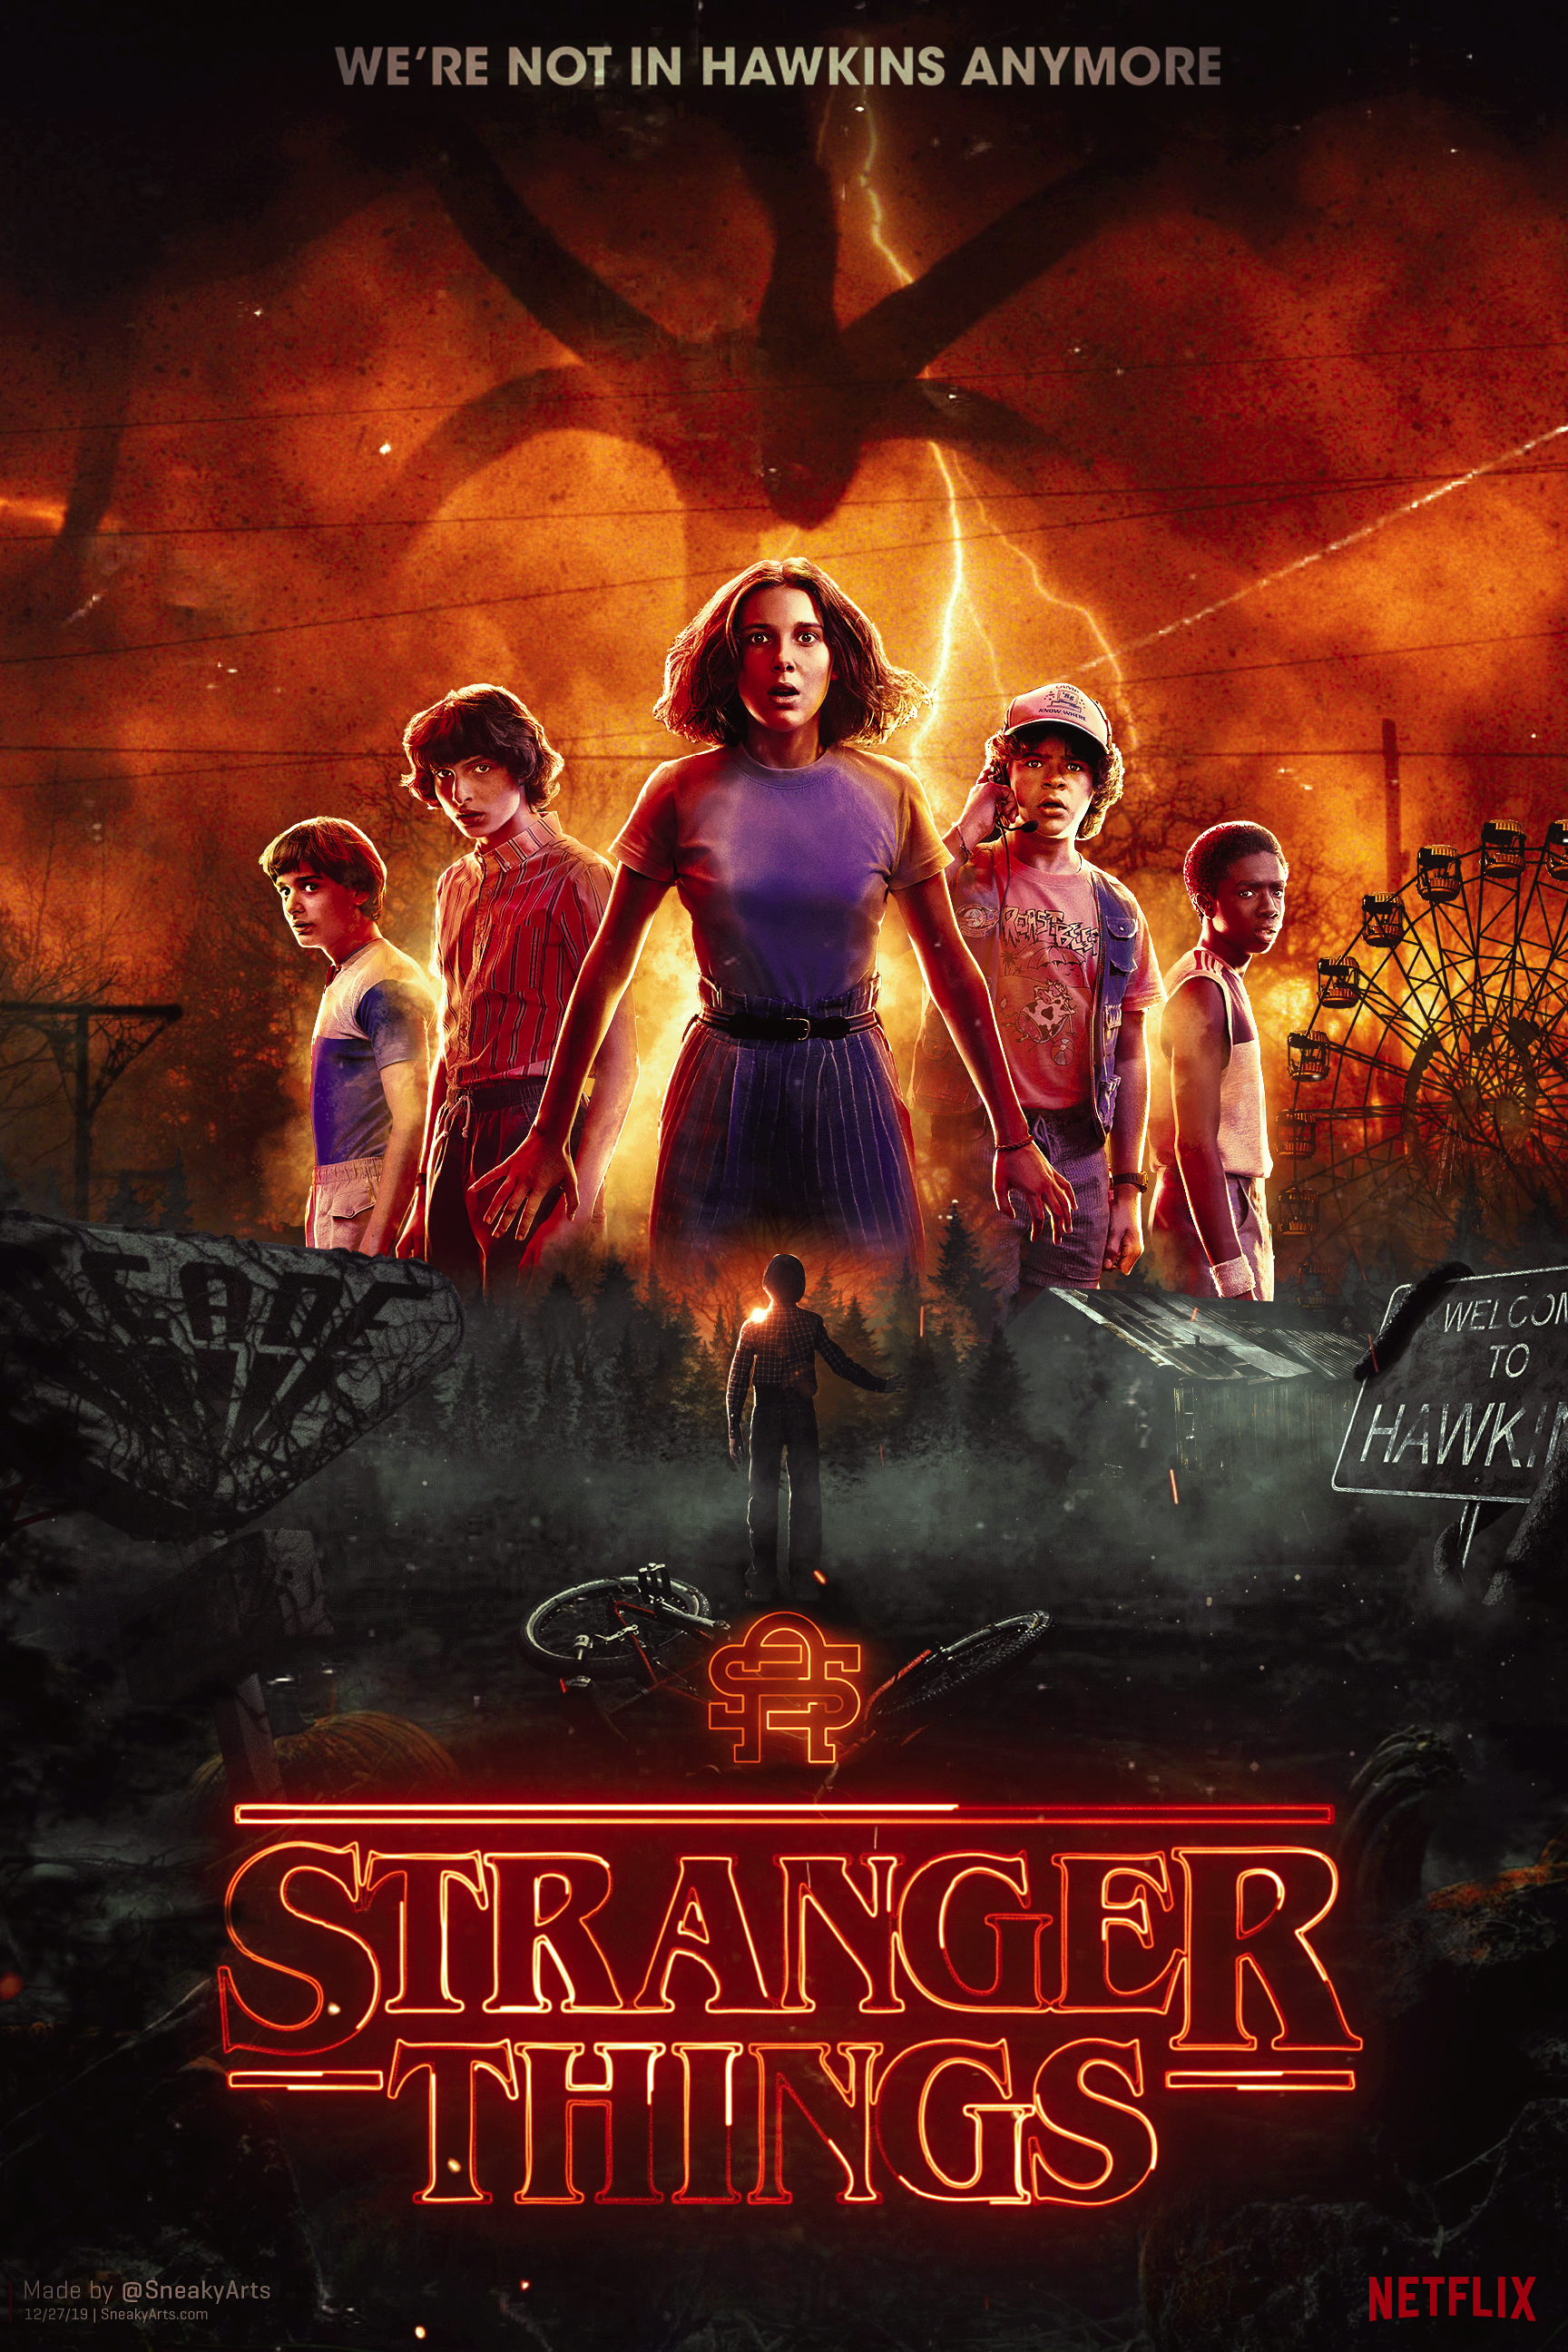 Stranger Things 4 Volume 2 Poster by AkiTheFull on DeviantArt